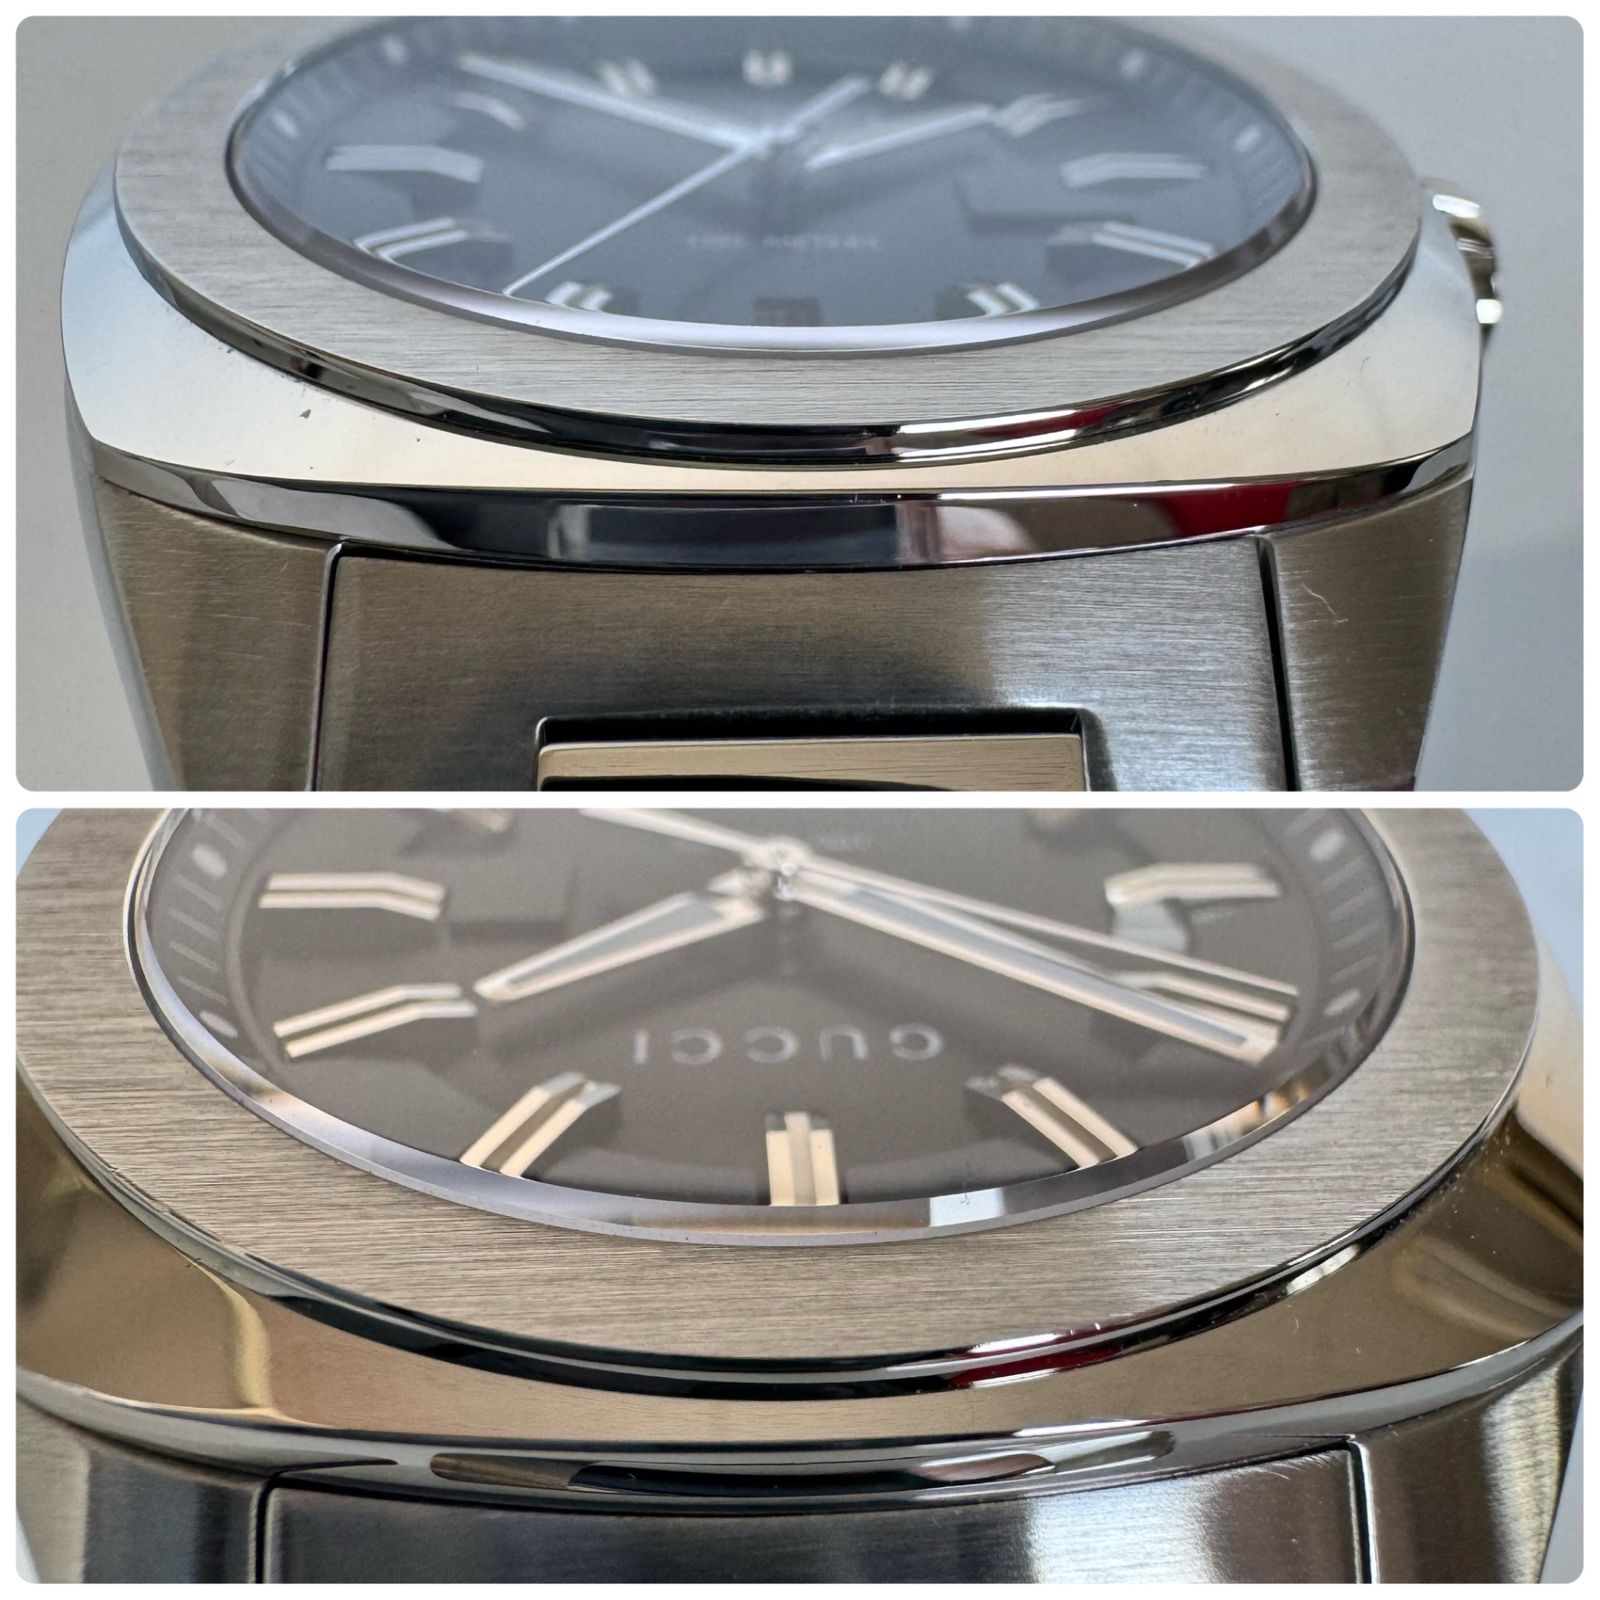 セール特価グッチ GG2570 新品 腕時計 シルバー YA142201 ブラック 未使用品 並行輸入品 男性用